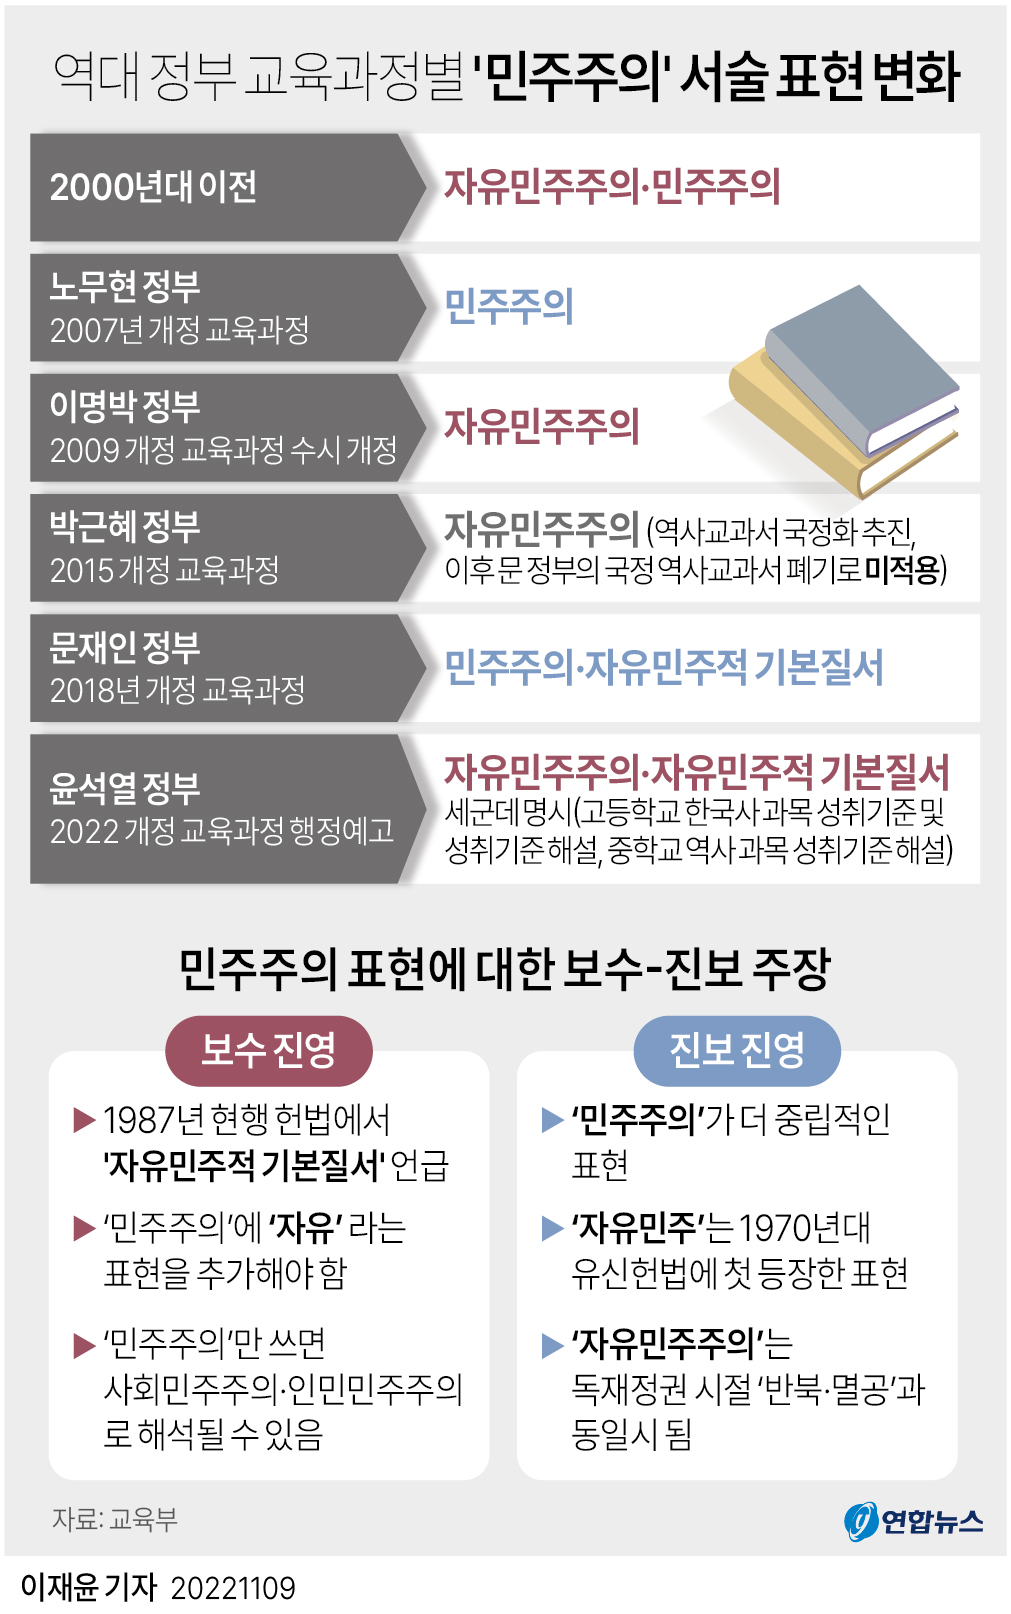 [그래픽] 역대 정부 교육과정별 '민주주의' 서술 표현 변화